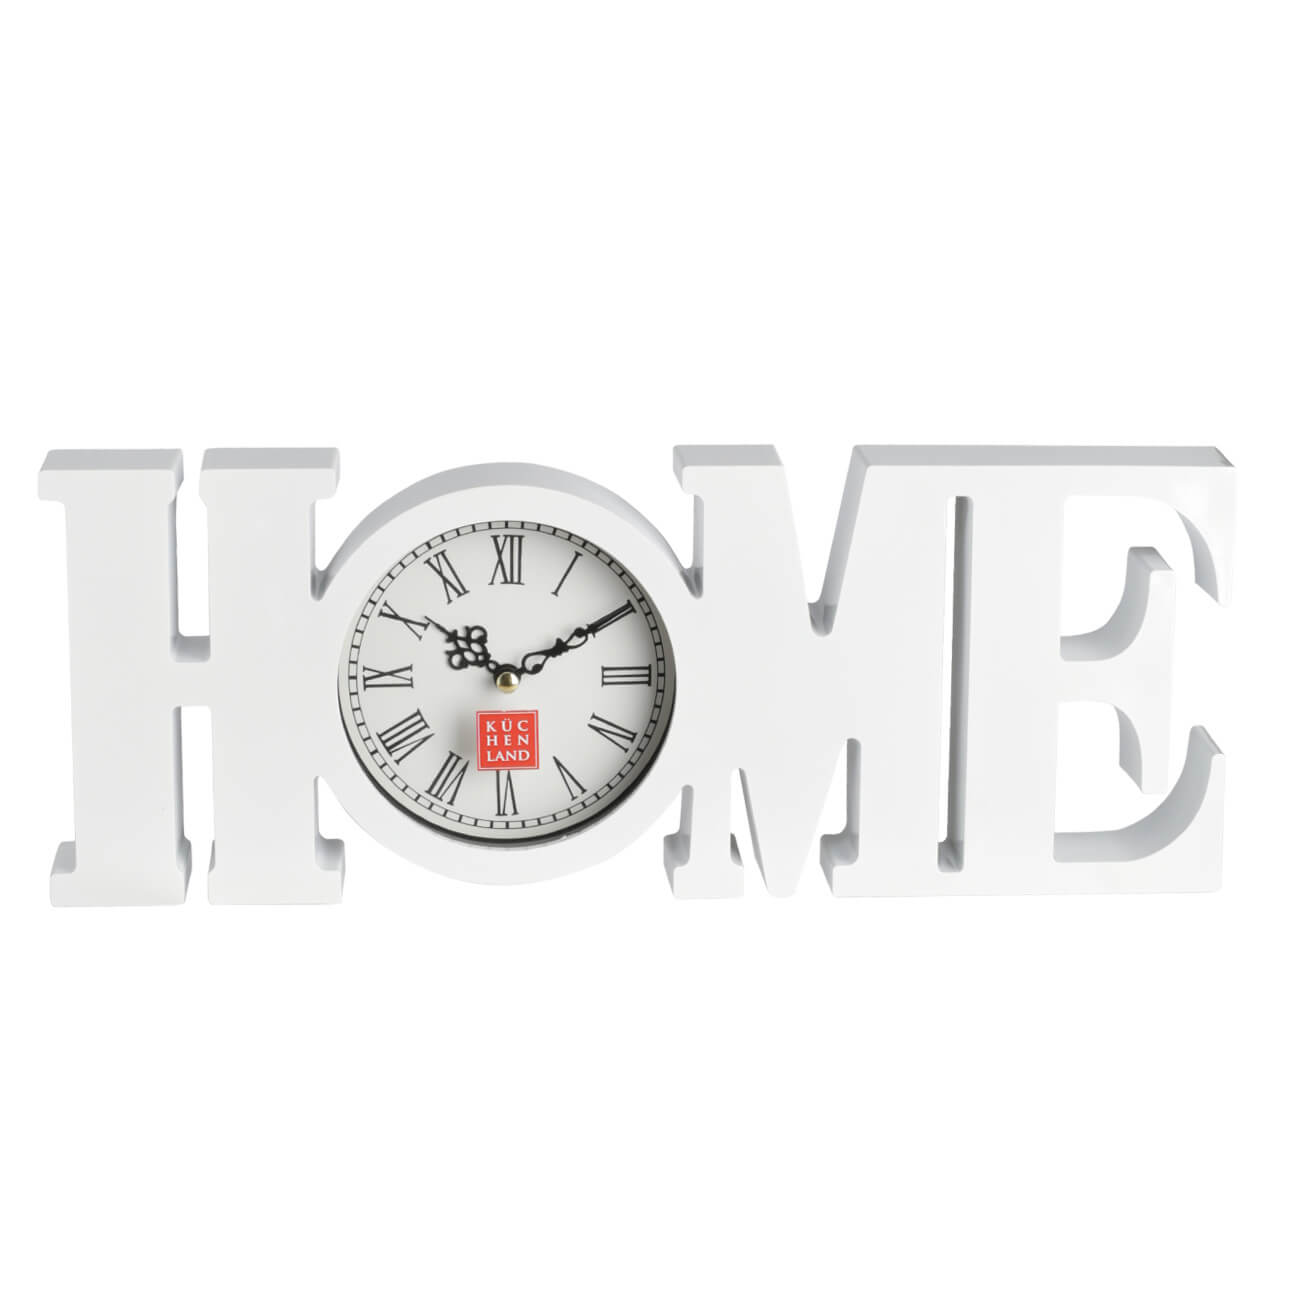 Часы настенные, 39х15 см, пластик/стекло, белые, Ноmе, Home deco настенные часы розарий 30x30 см